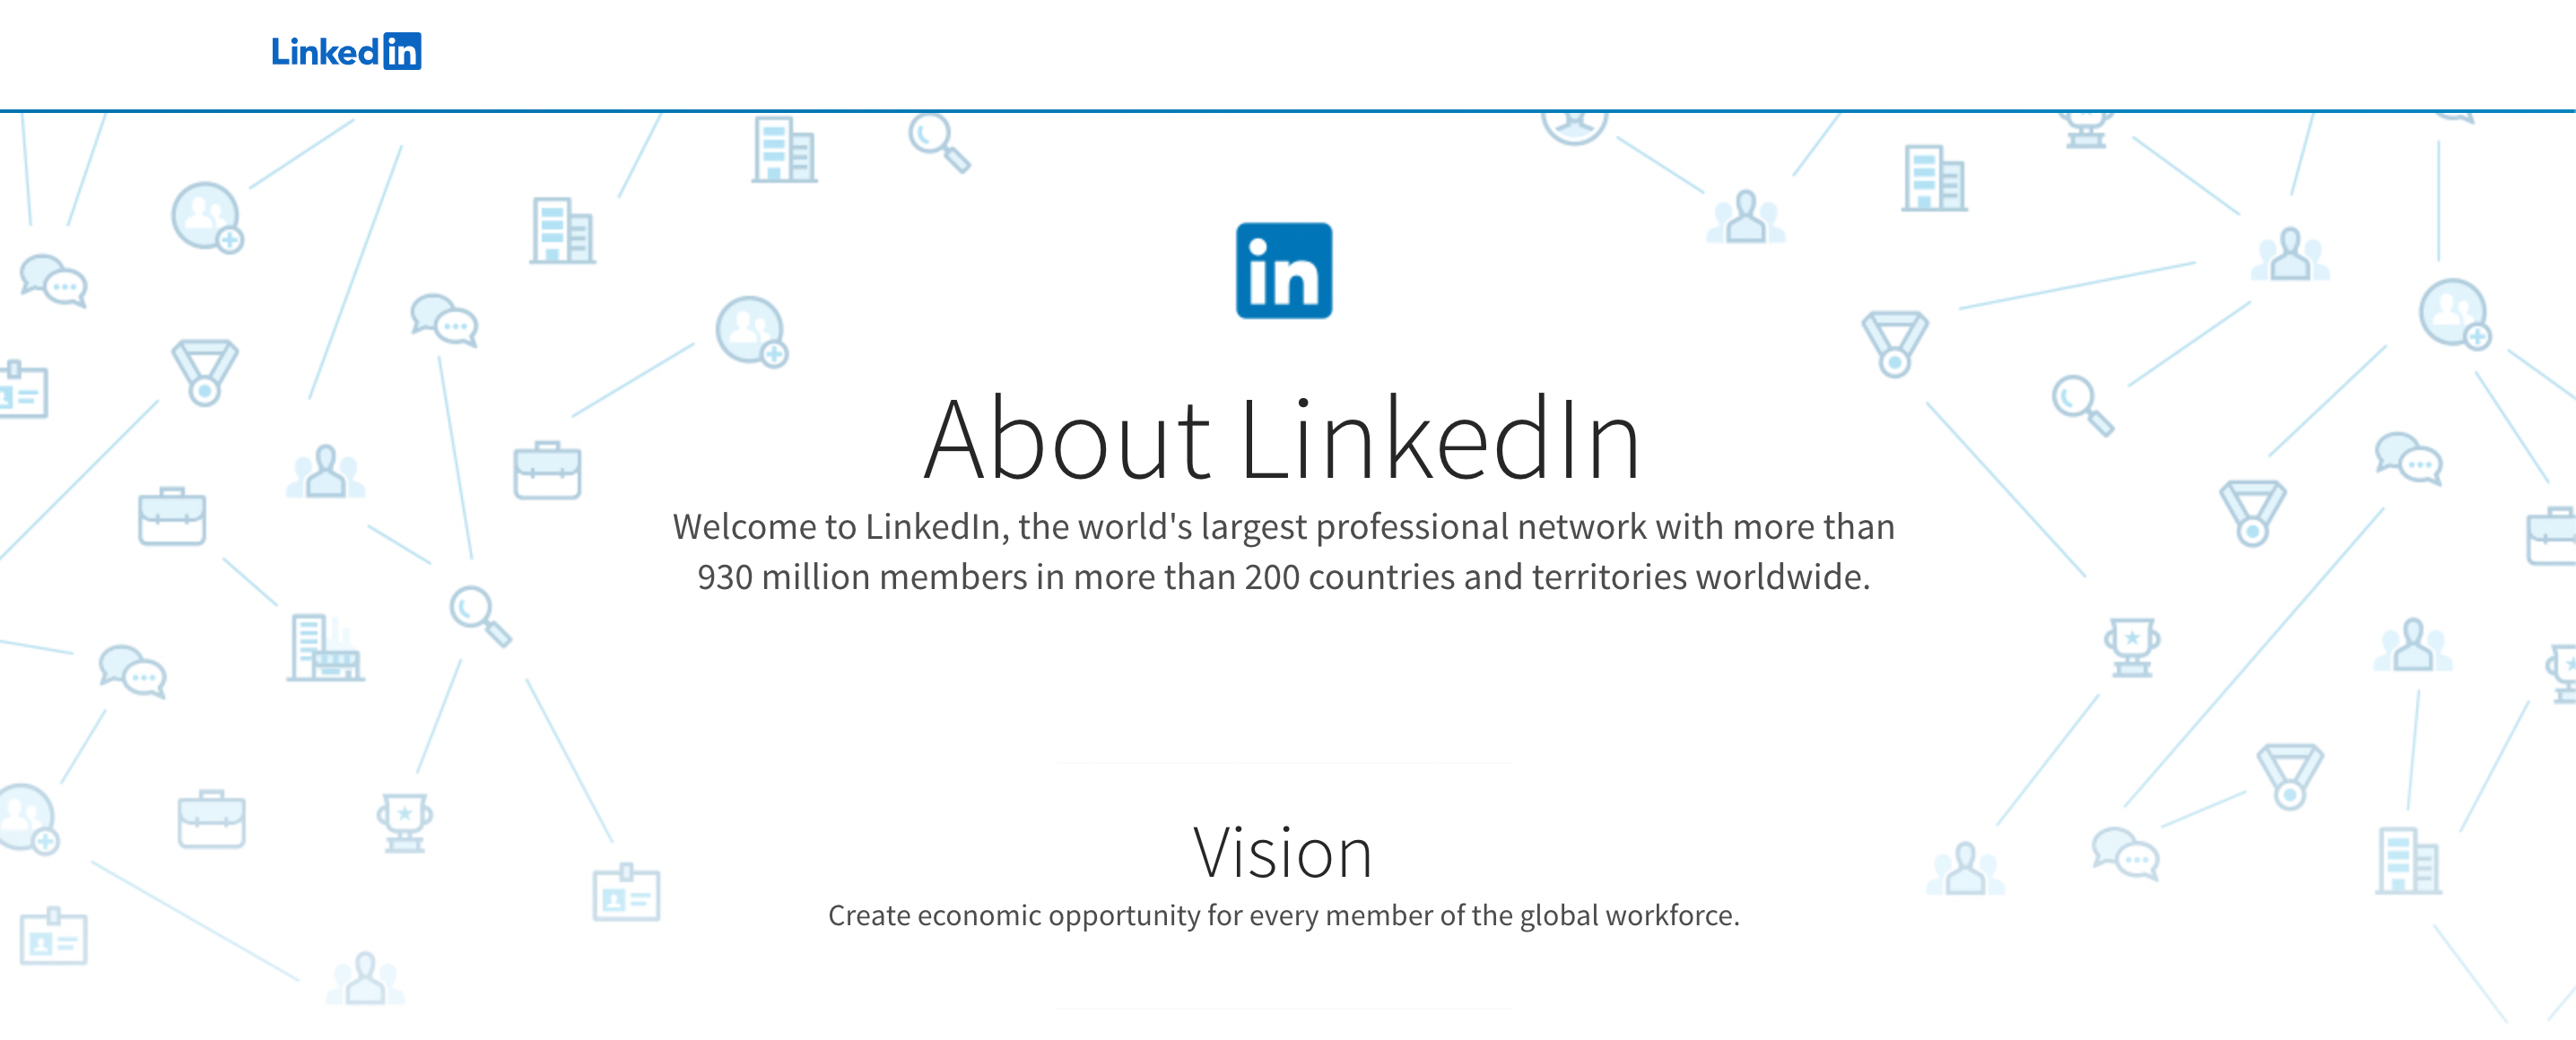 LinkedIn is a great social media marketing platform.